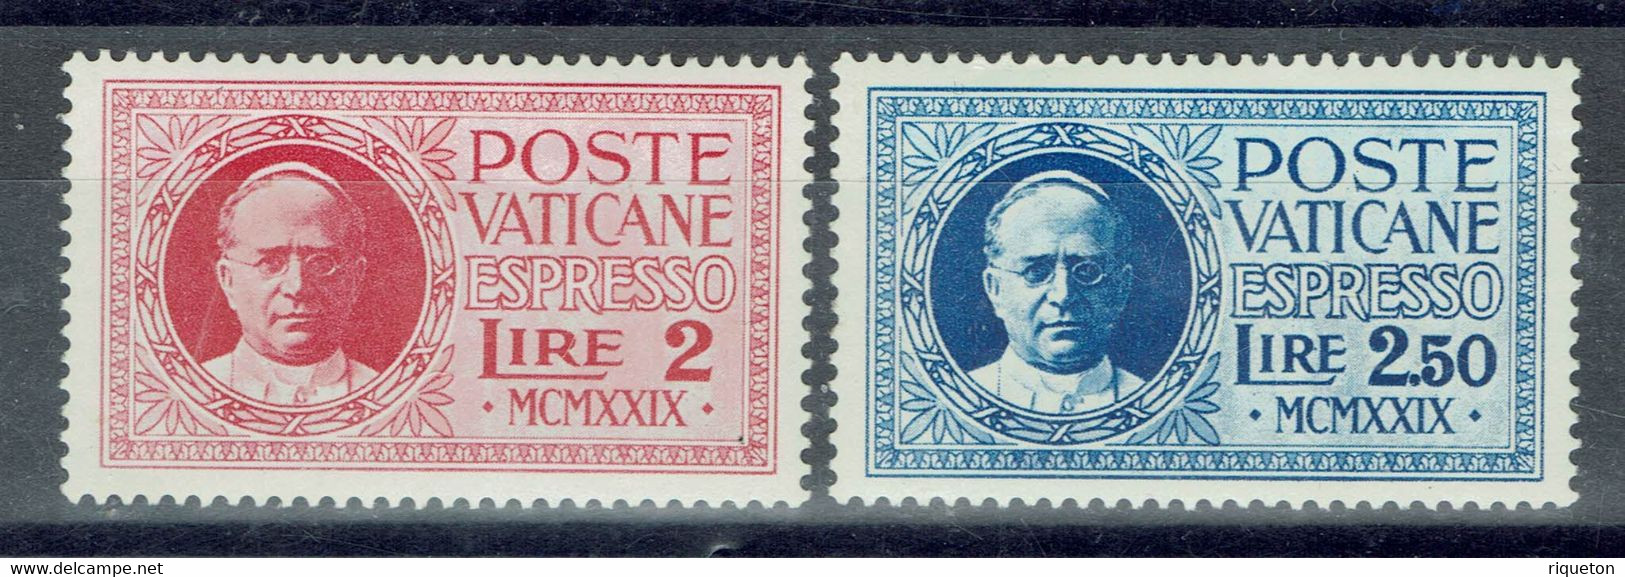 Vatican - 1929 - Timbres Pour Lettres Par Exprès - N° 1 & 2 - Neufs - XX - MNH - - Express